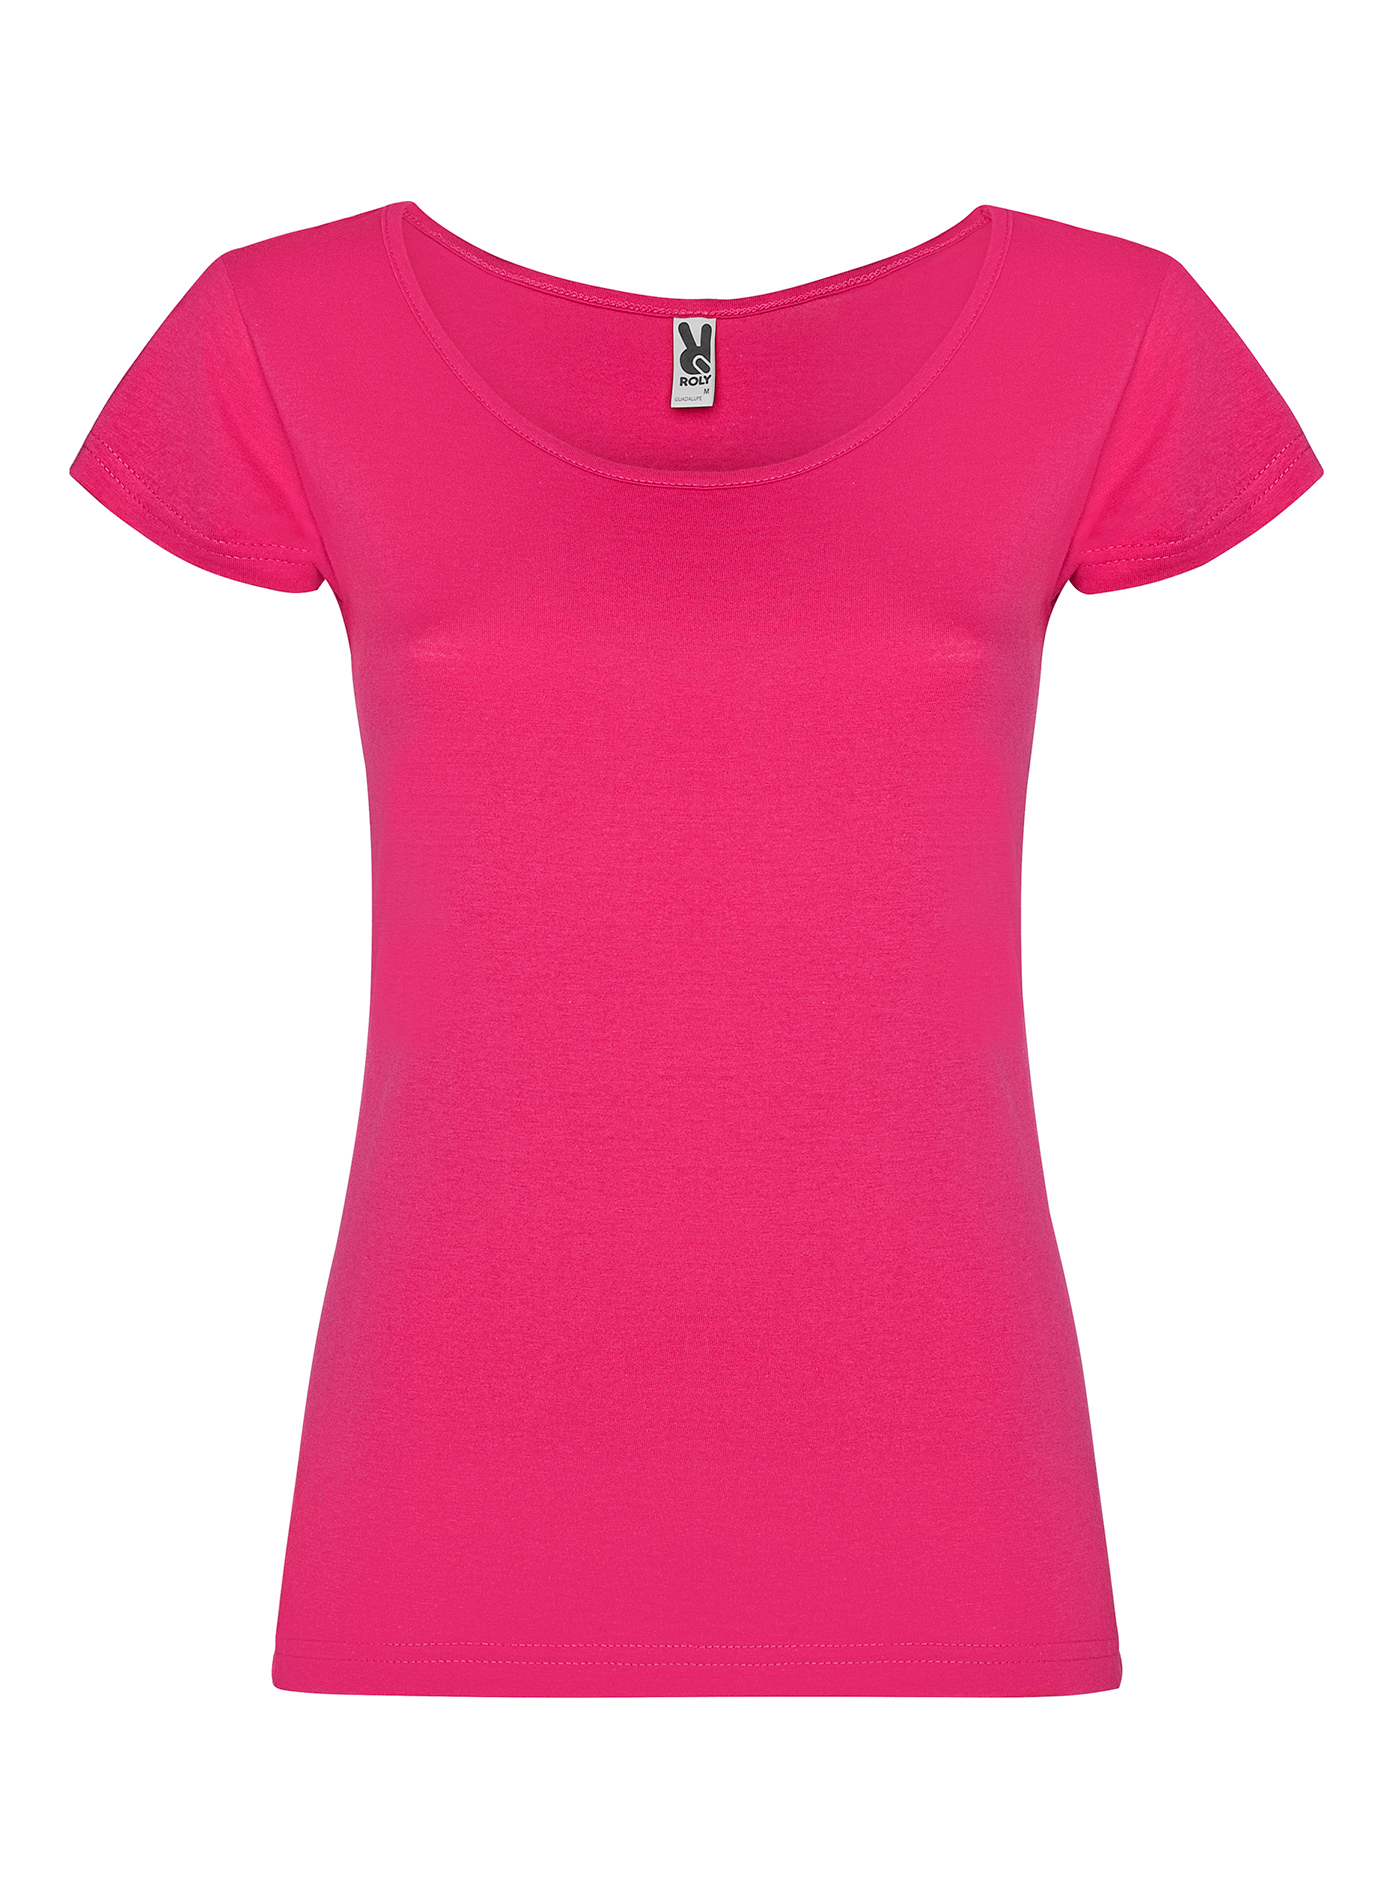 Dámské tričko Roly Guadalupe - Sytě růžová XL